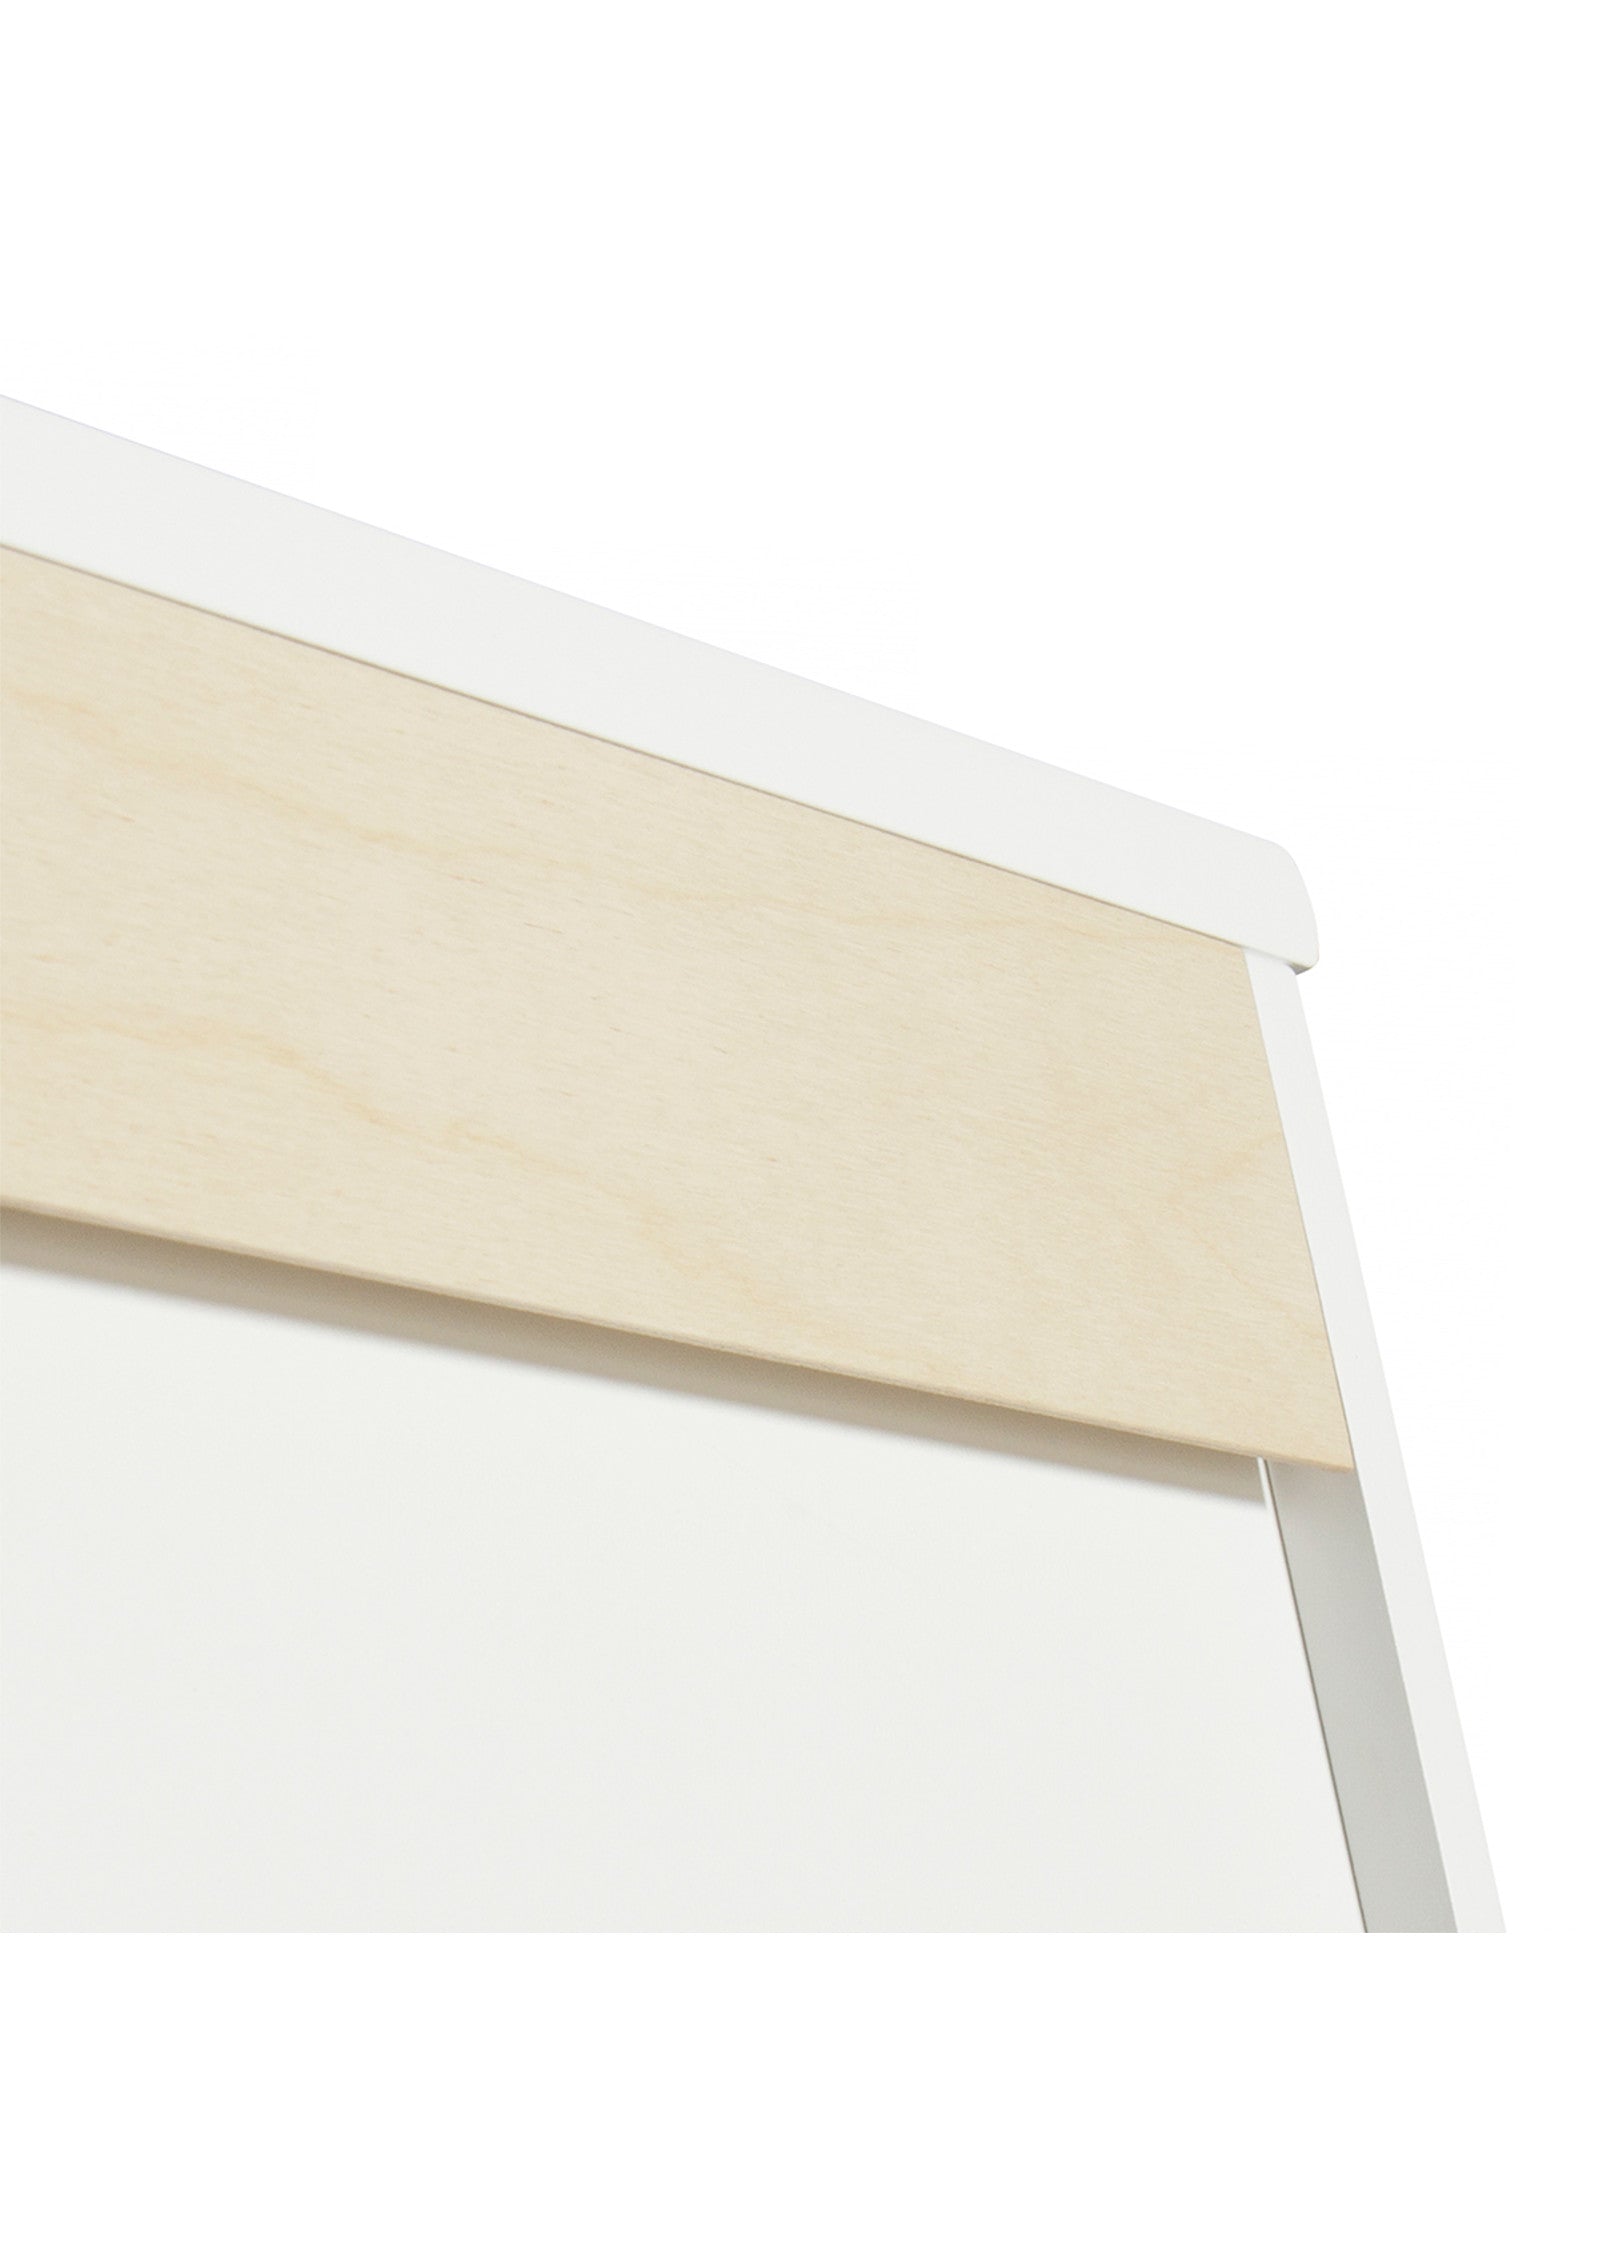 'Wood' Regal horizontal 5 x 2 / weiß zum Aufhängen